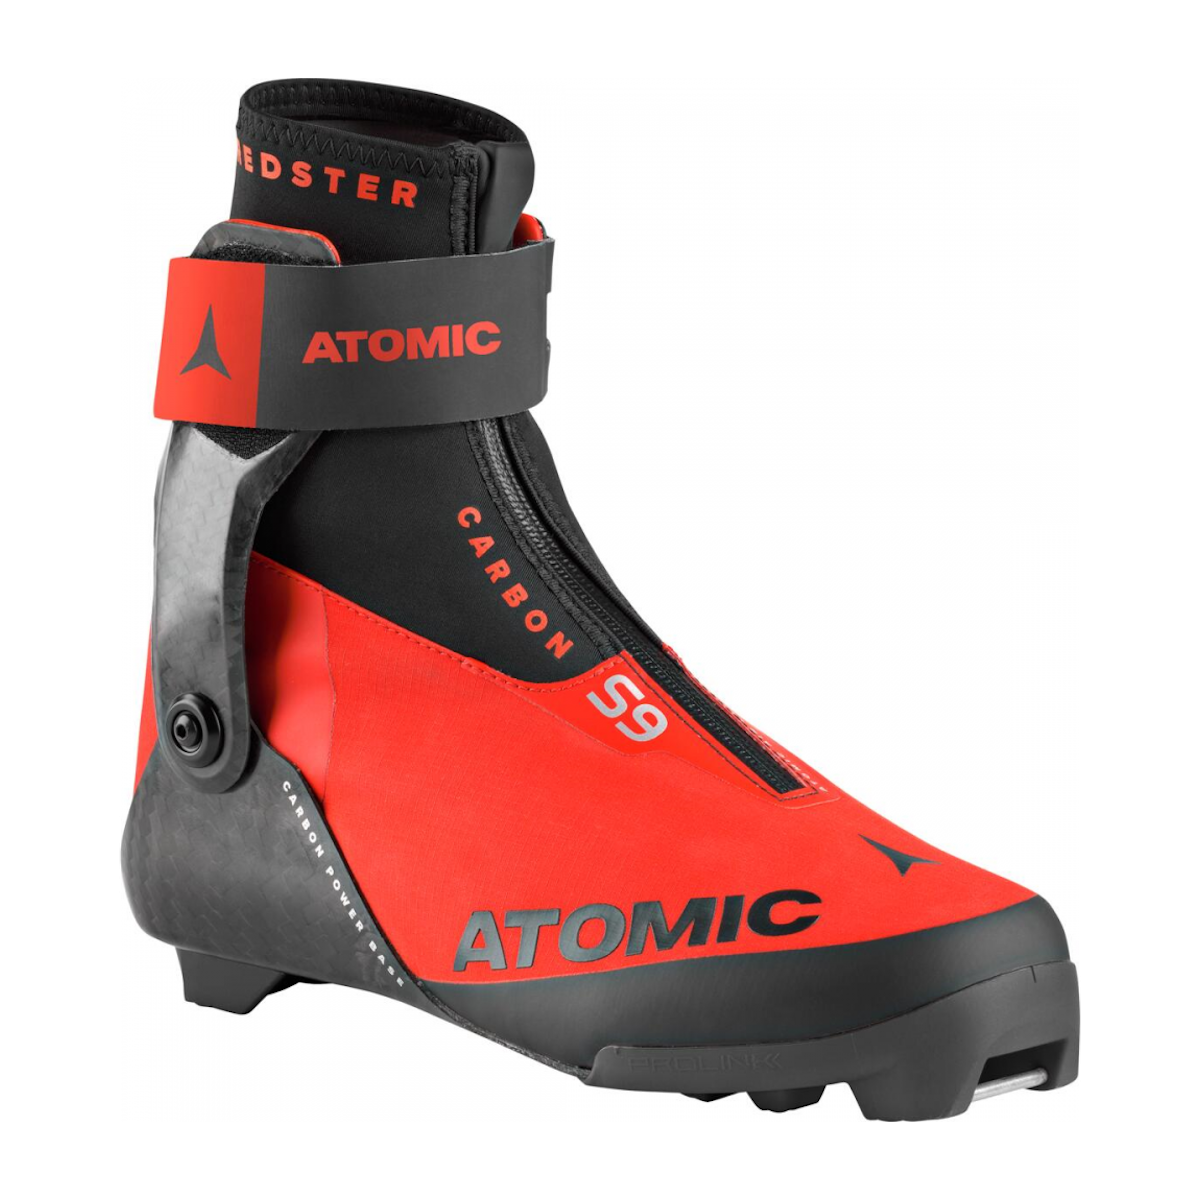 ATOMIC REDSTER S9 CARBON PROLINK skating nordic boots - black/red